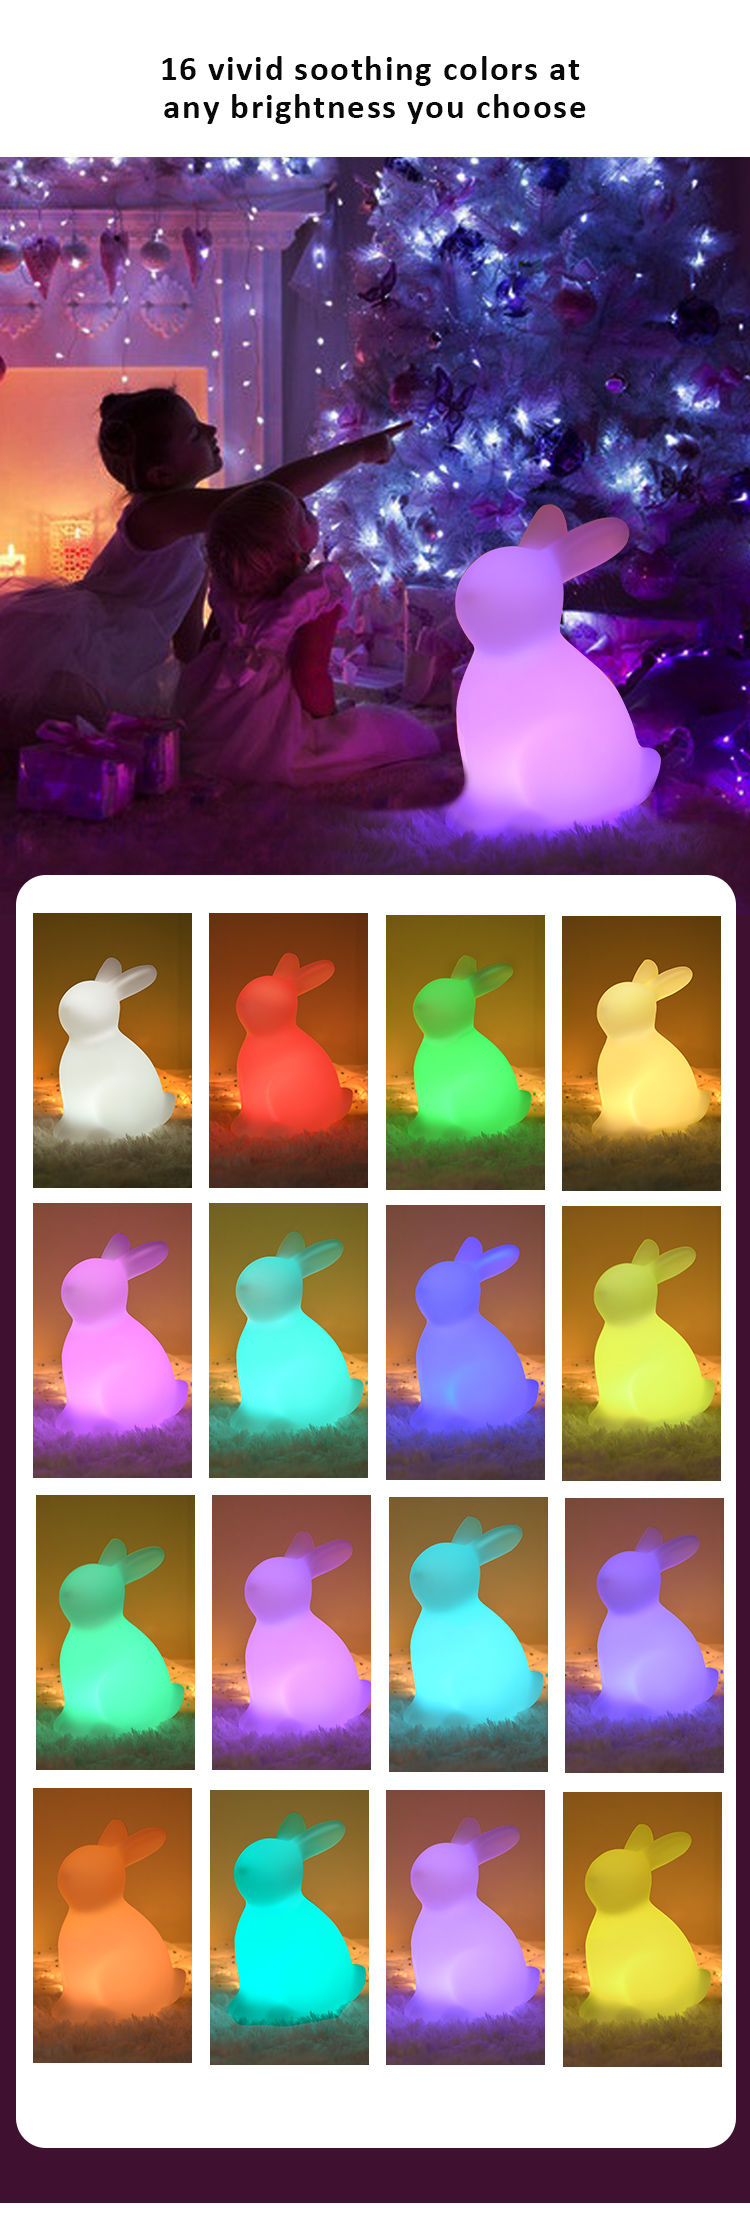 Night Light | LED Night Light | Bunny Night Light | Custom Night Light